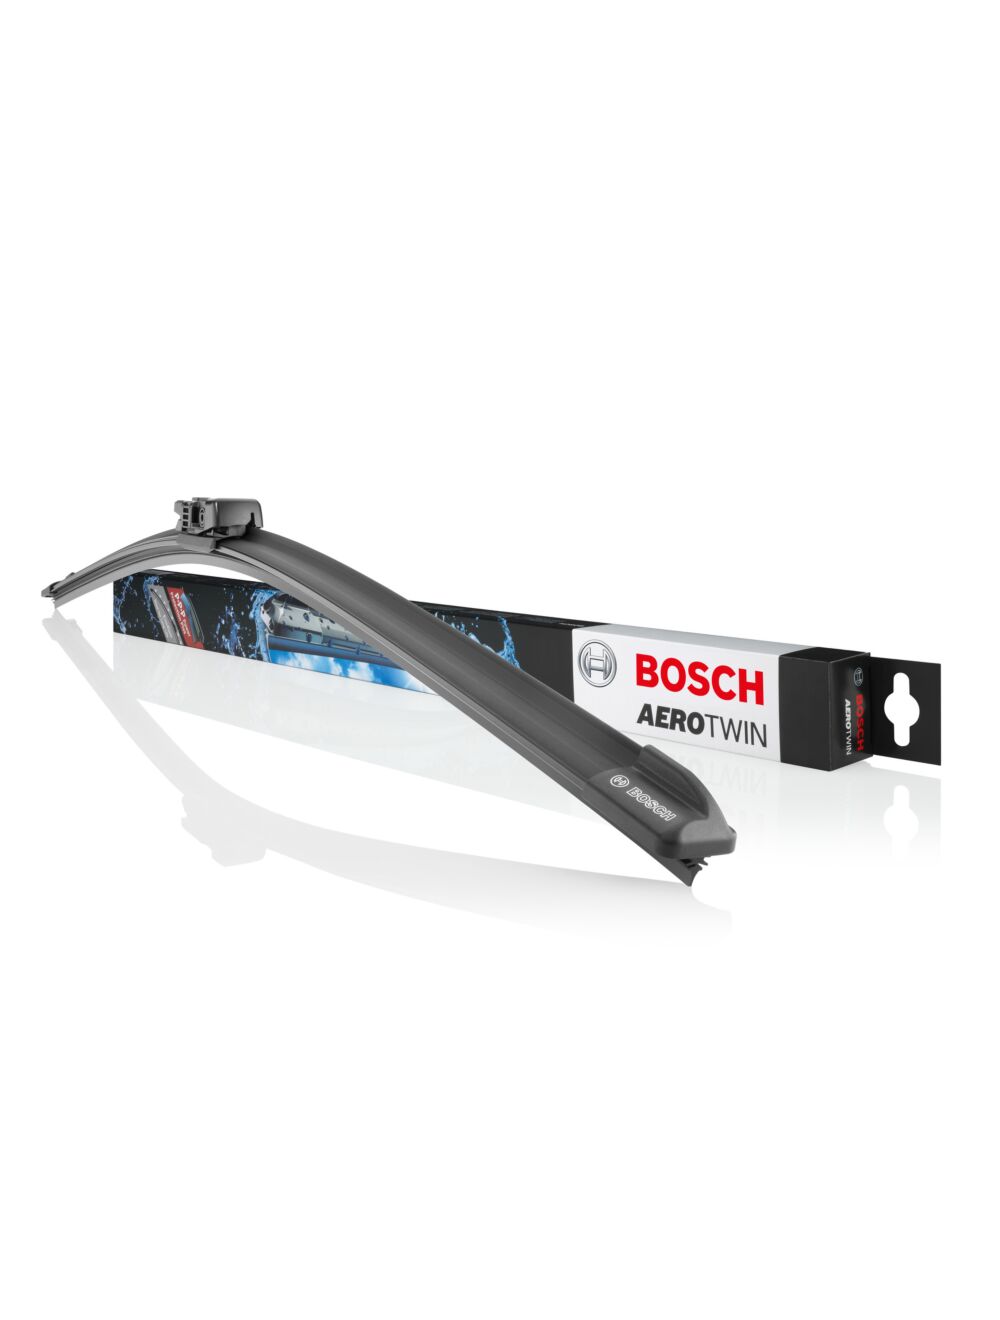 Welche Kriterien es beim Kaufen die Bosch aerotwin a933s zu bewerten gibt!